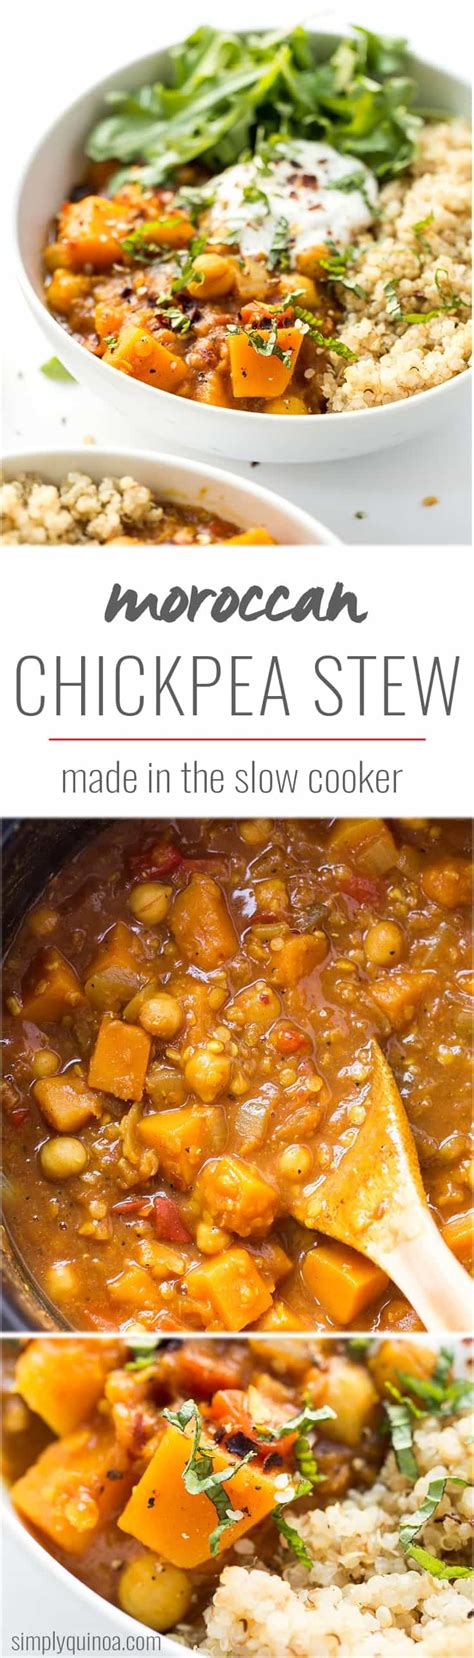 Moroccan Chickpea Stew Slow Cooker Recipe Simply Quinoa